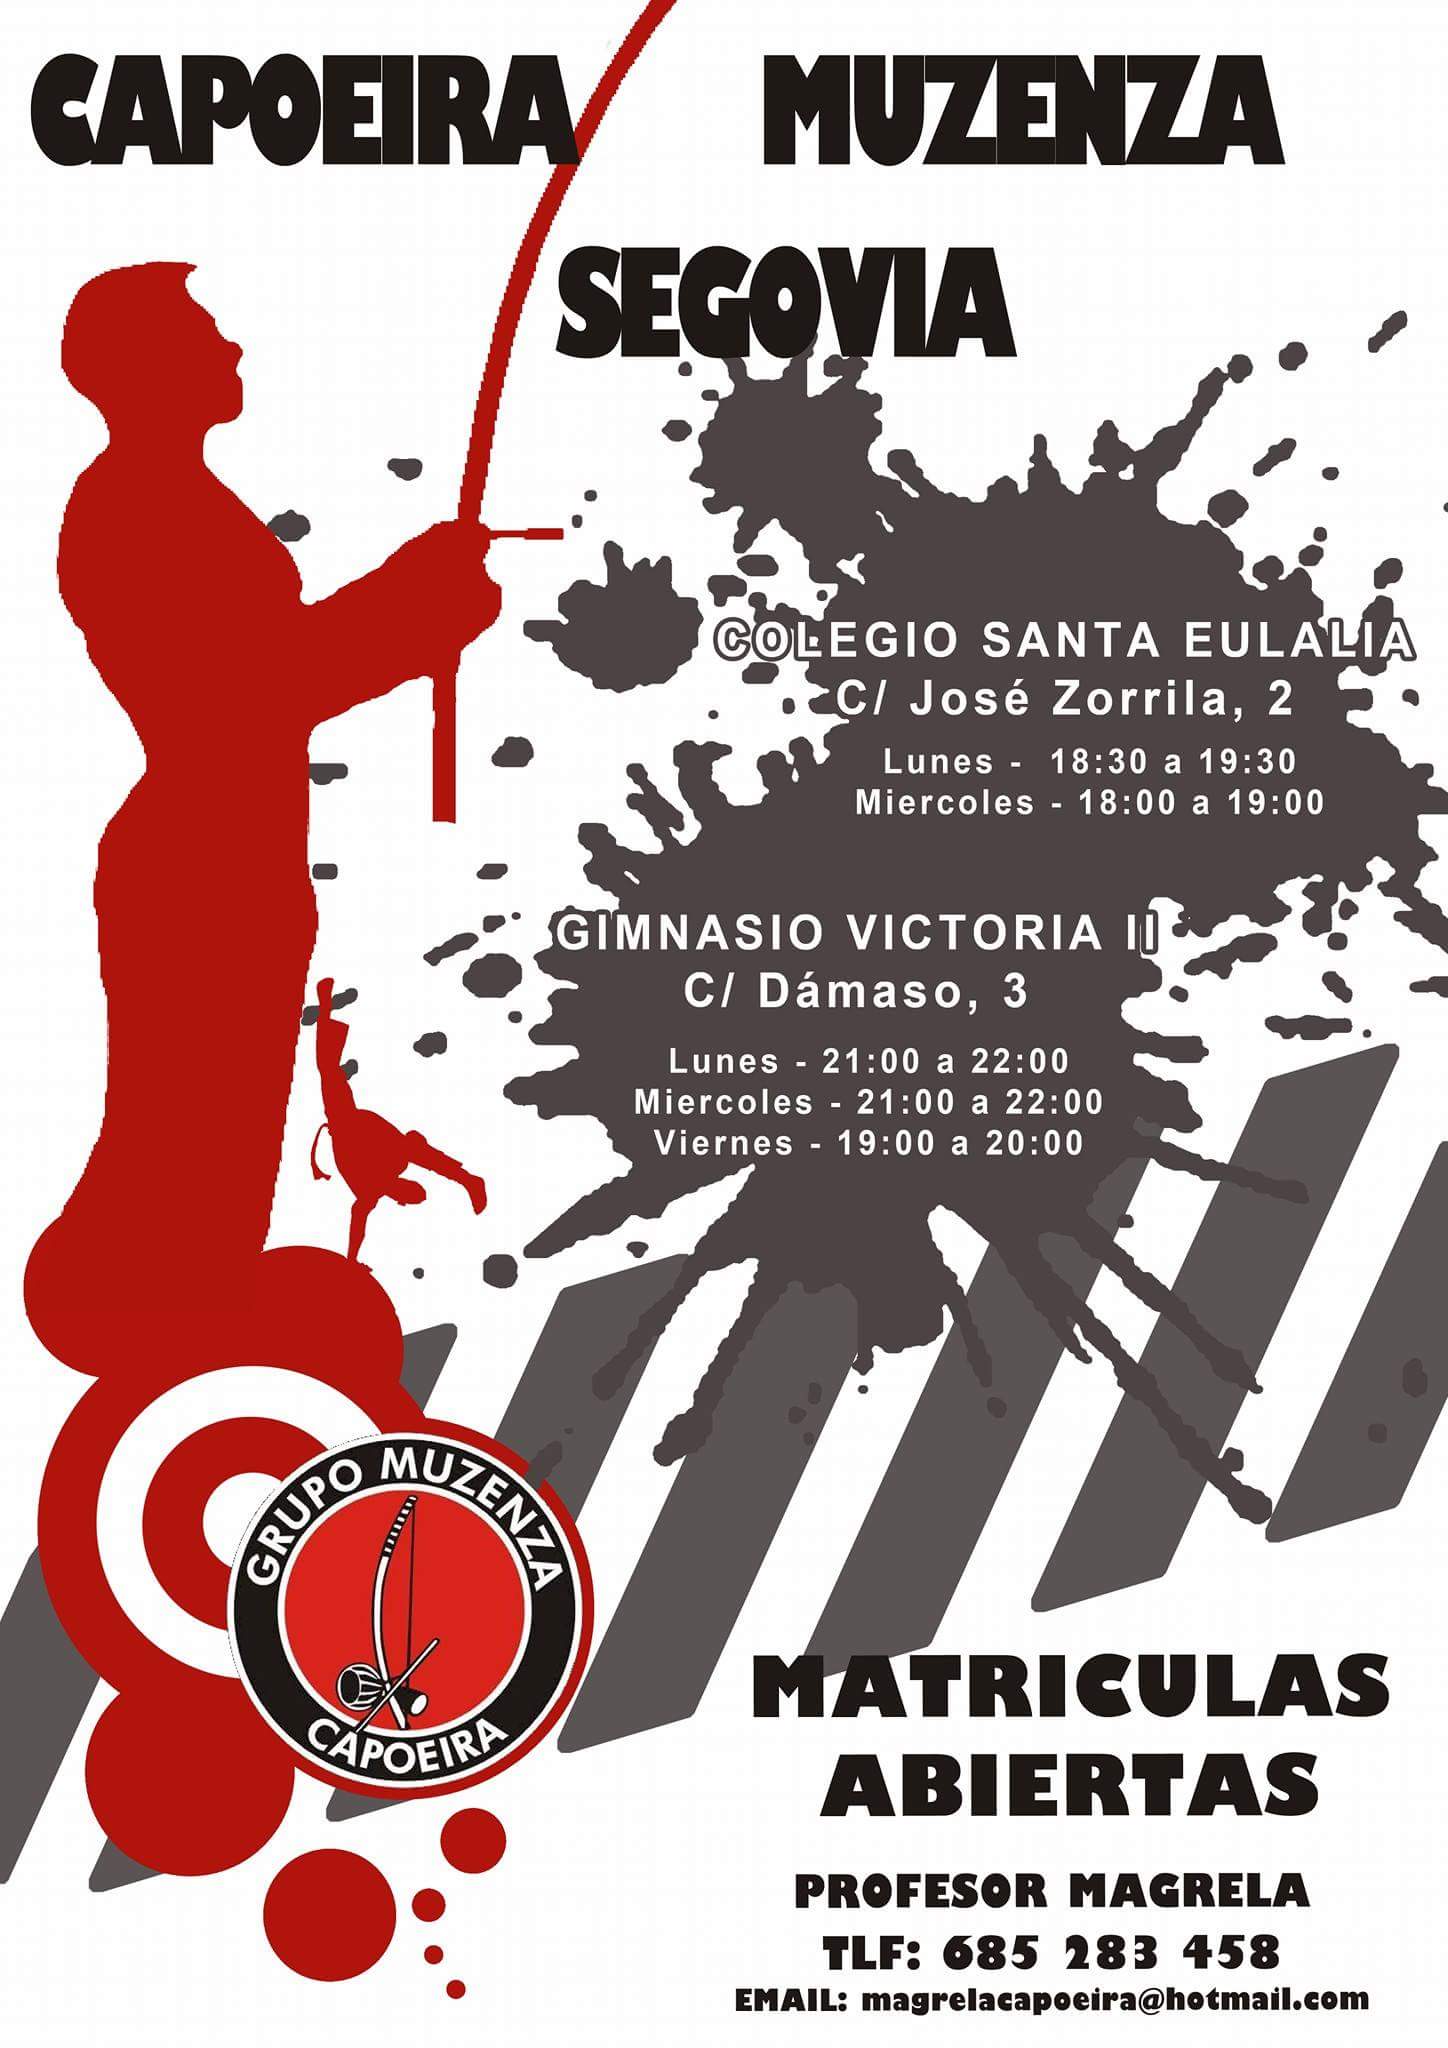 Jornada de puerta abiertas de Capoeira Muzenza Segovia